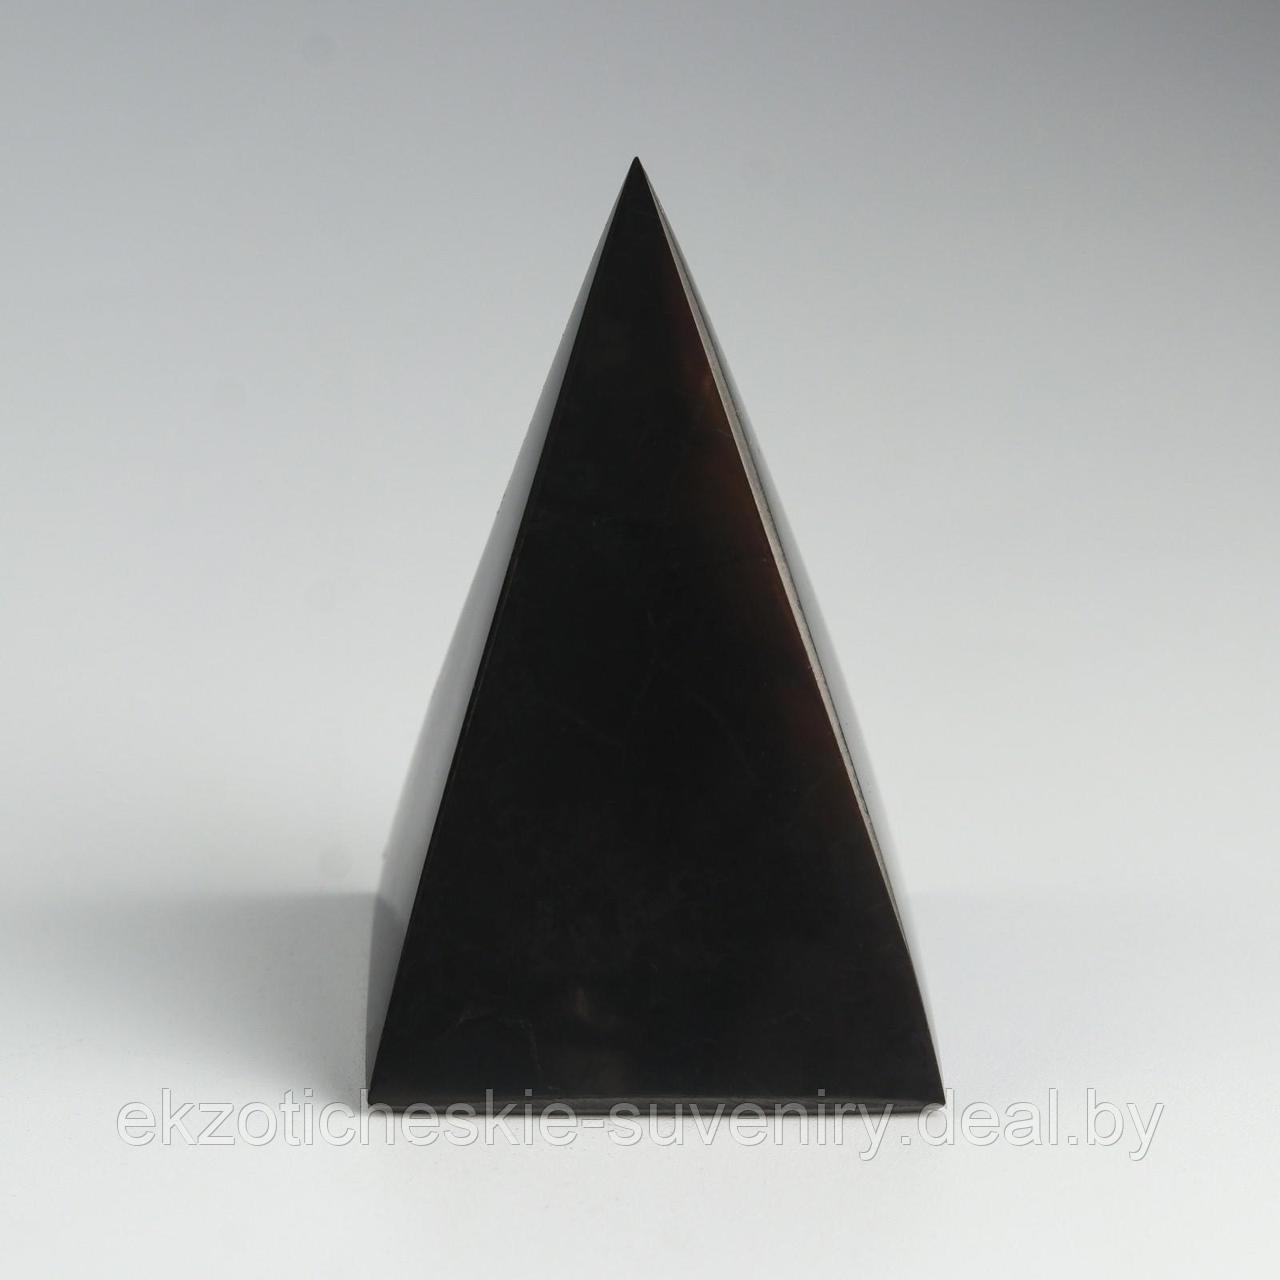 Пирамида из шунгита, высокая, полированная, 7 см